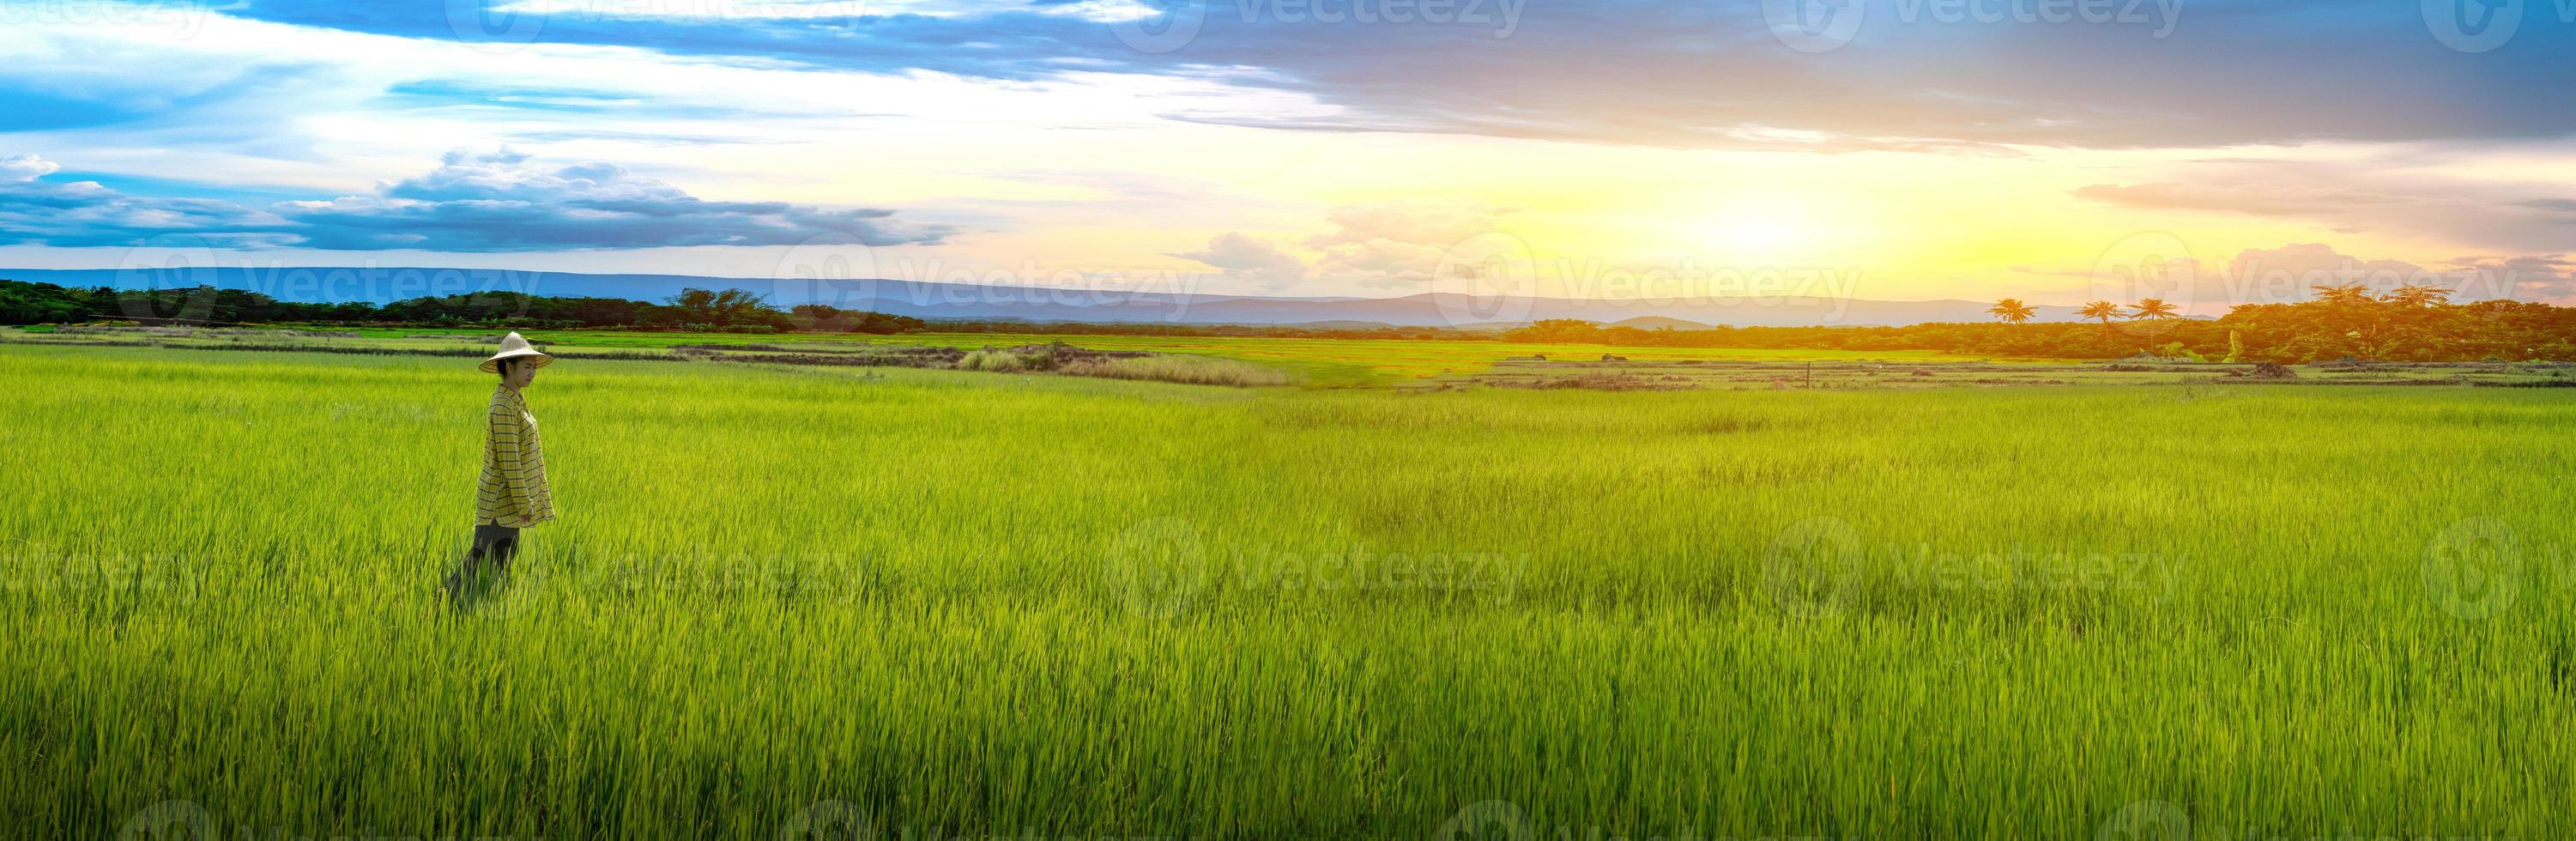 kvinna bonde står ser gröna ris plantor i en risfält med vacker himmel och moln foto